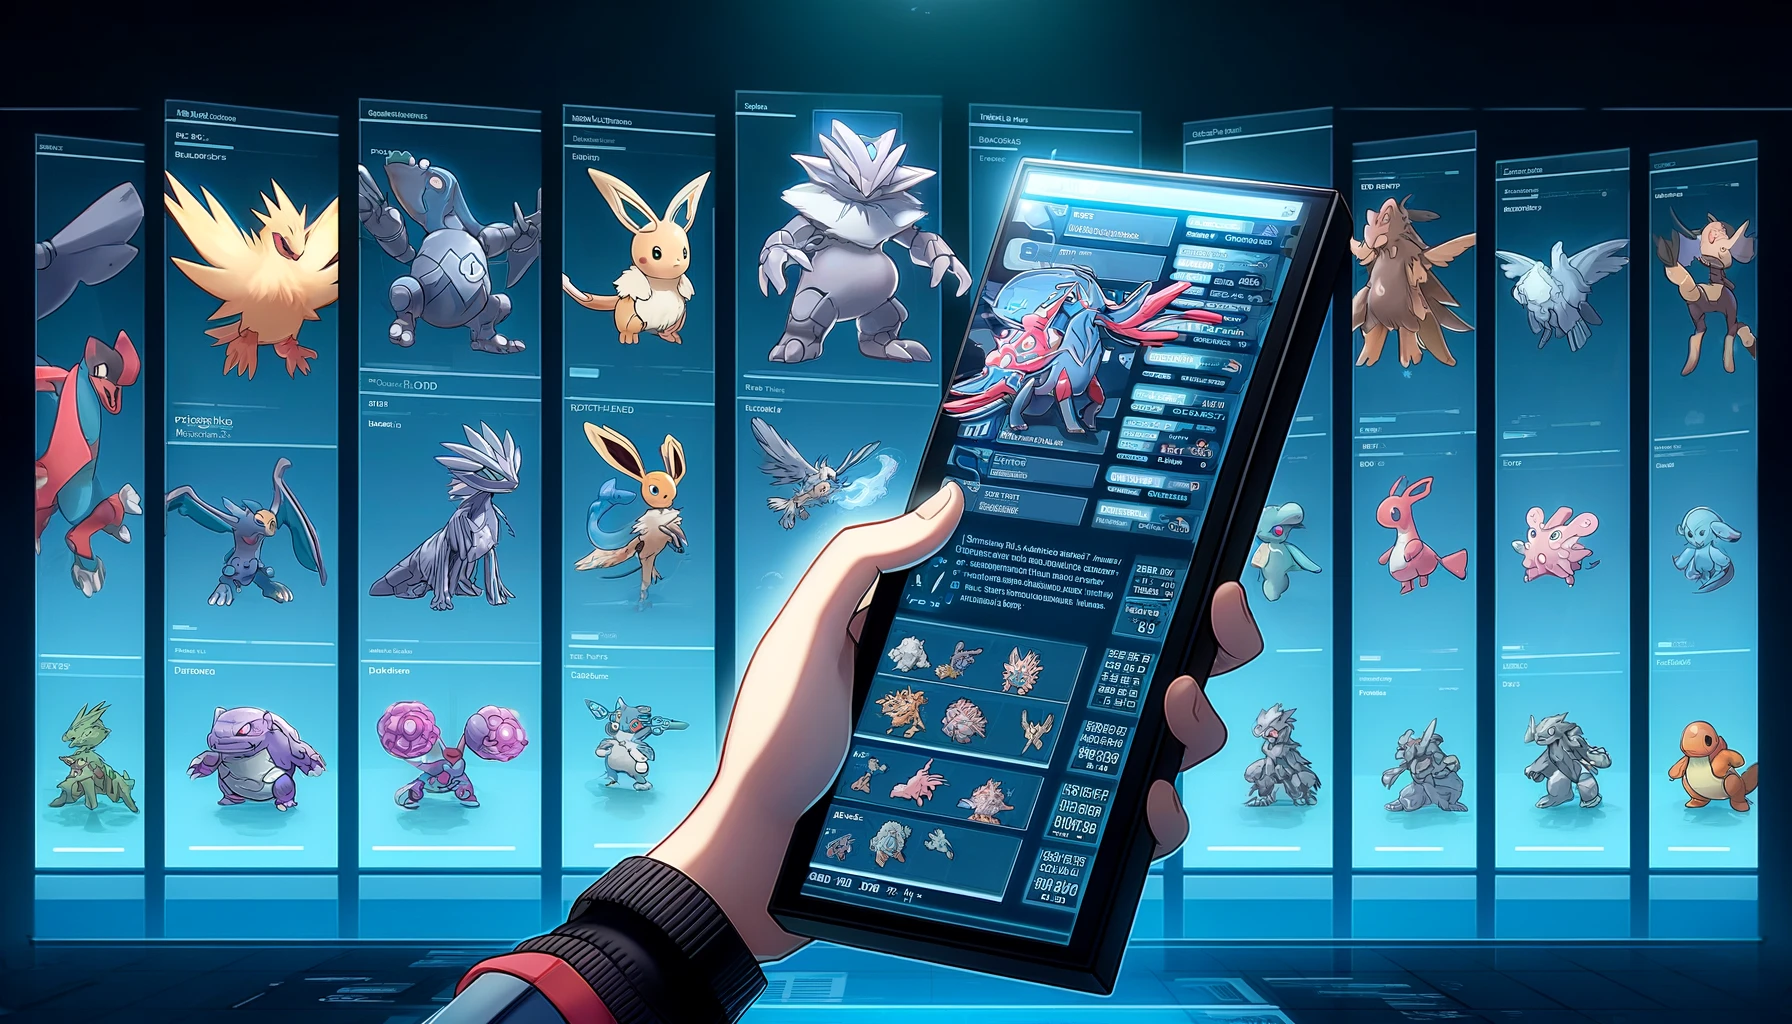 Pokémon Infinite Fusion Pokédex'. The image shows a digital Pokedex interface displaying various fusion